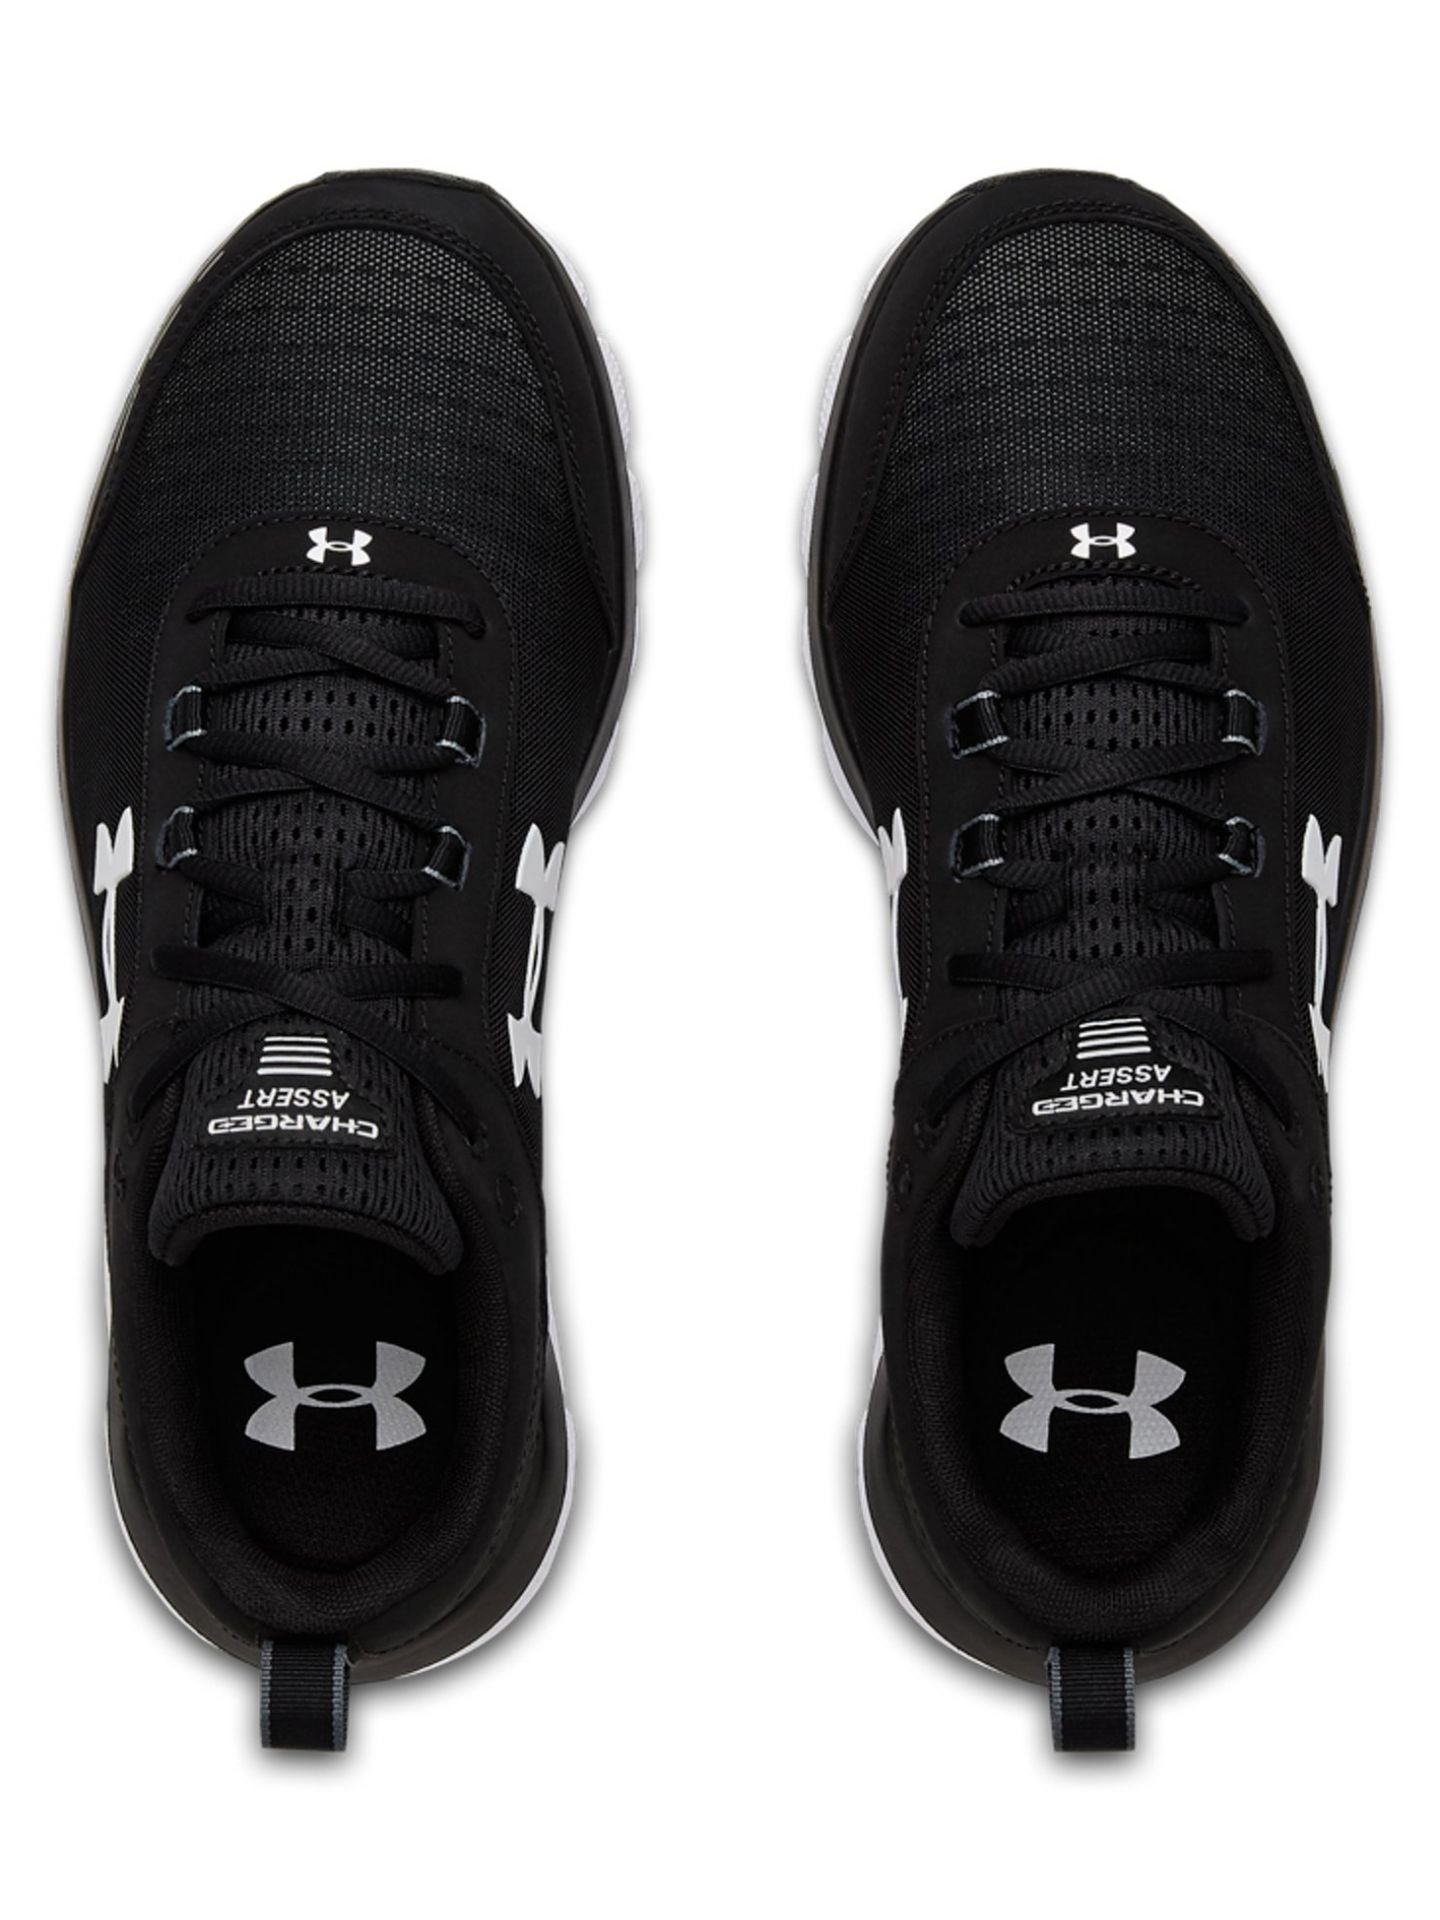 Men's UA Charged Assert 8 Wide 4E Running Shoes